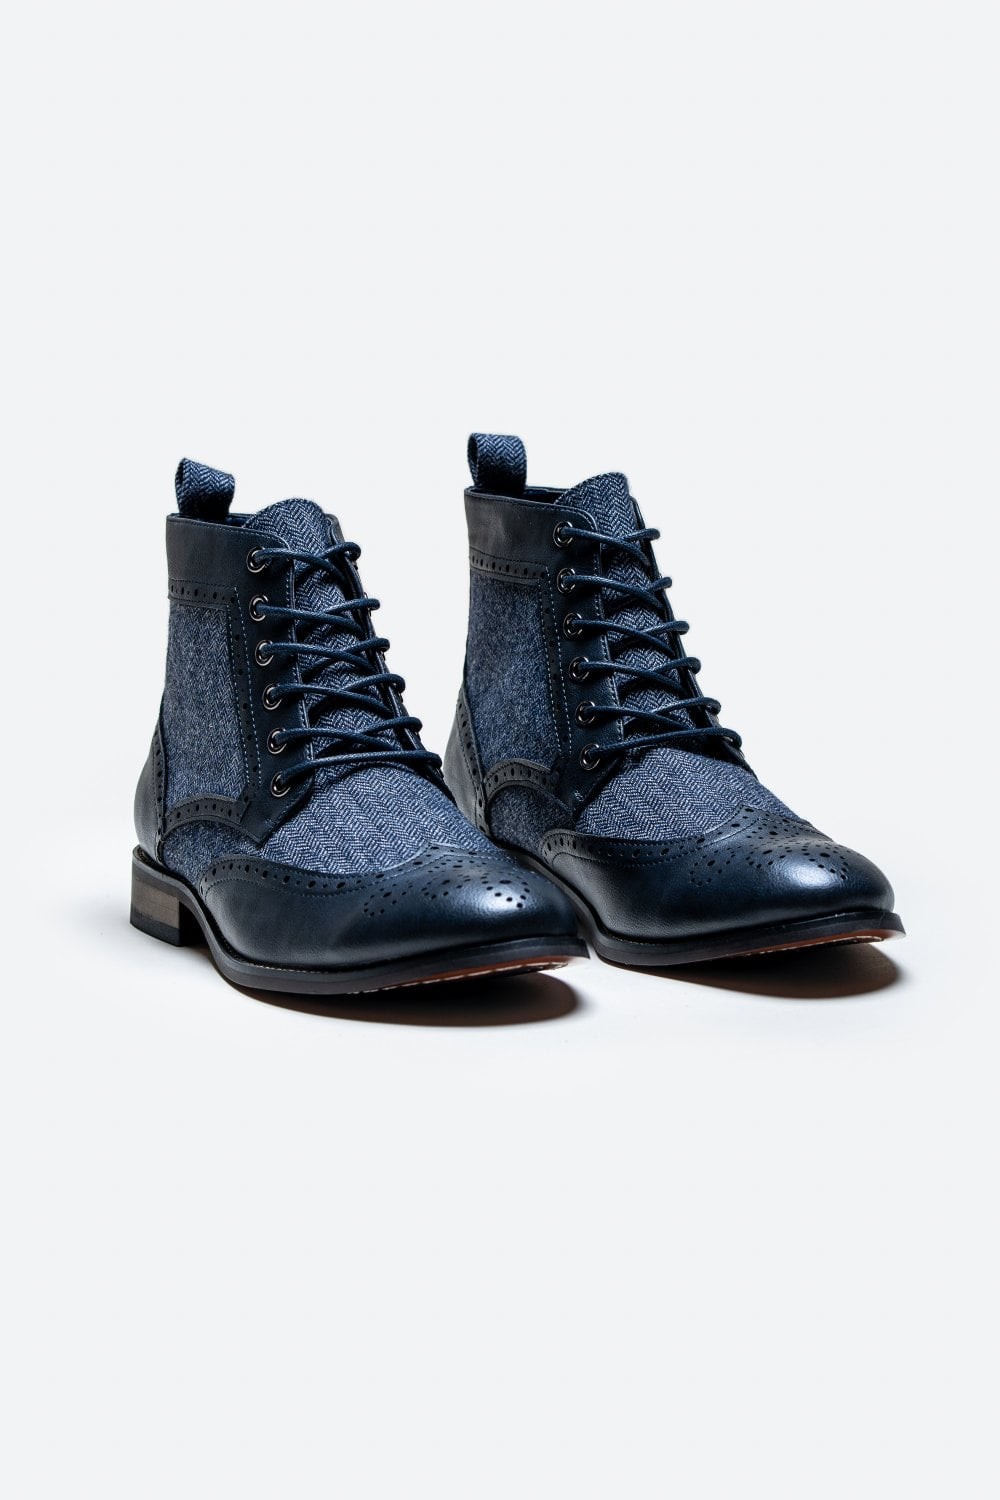 Men's Ankle Boots Lace Up Brogue Shoes - JONES - Navy Blue